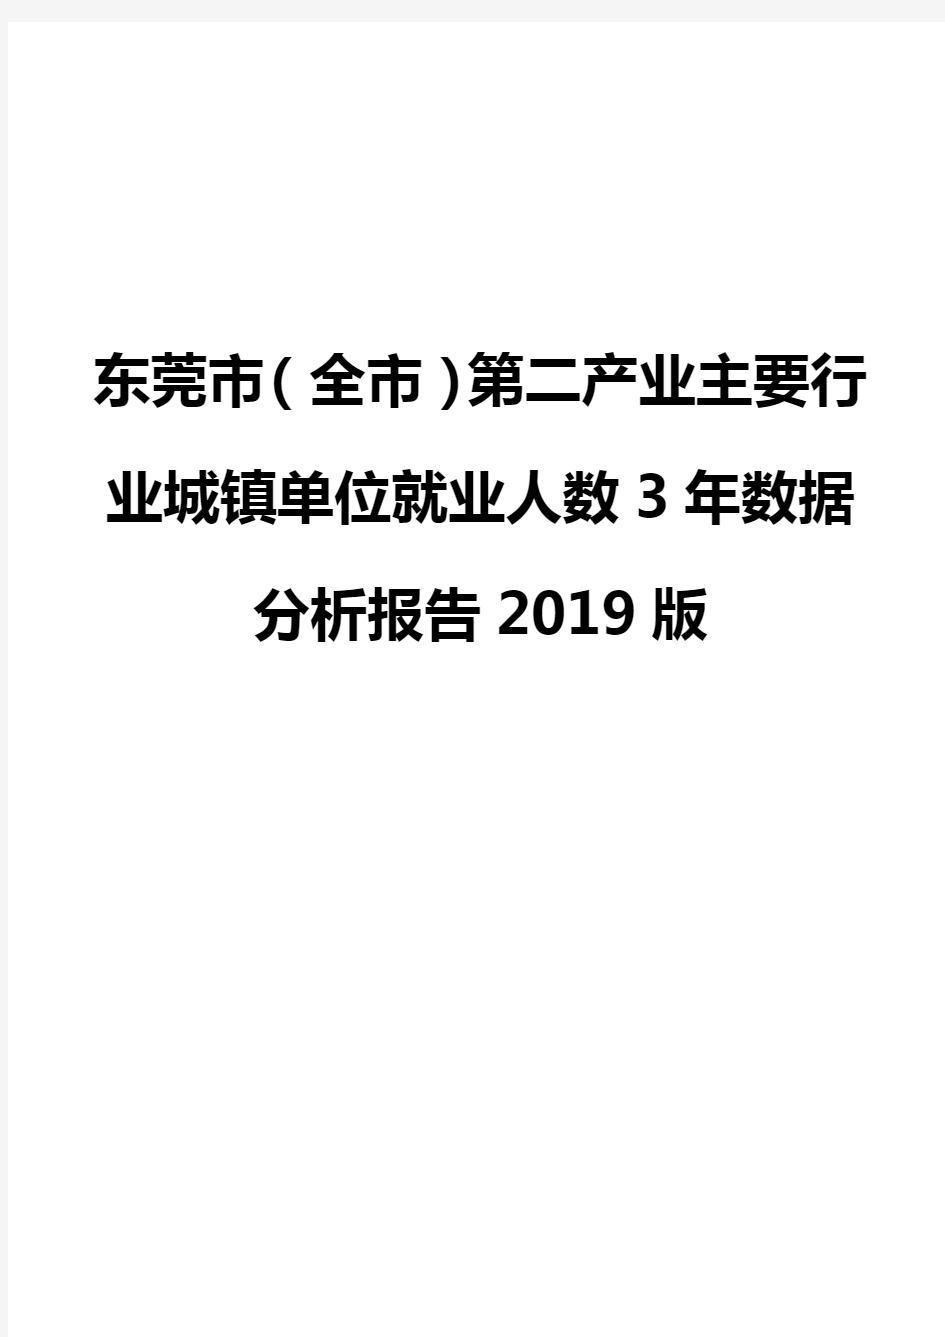 东莞市(全市)第二产业主要行业城镇单位就业人数3年数据分析报告2019版